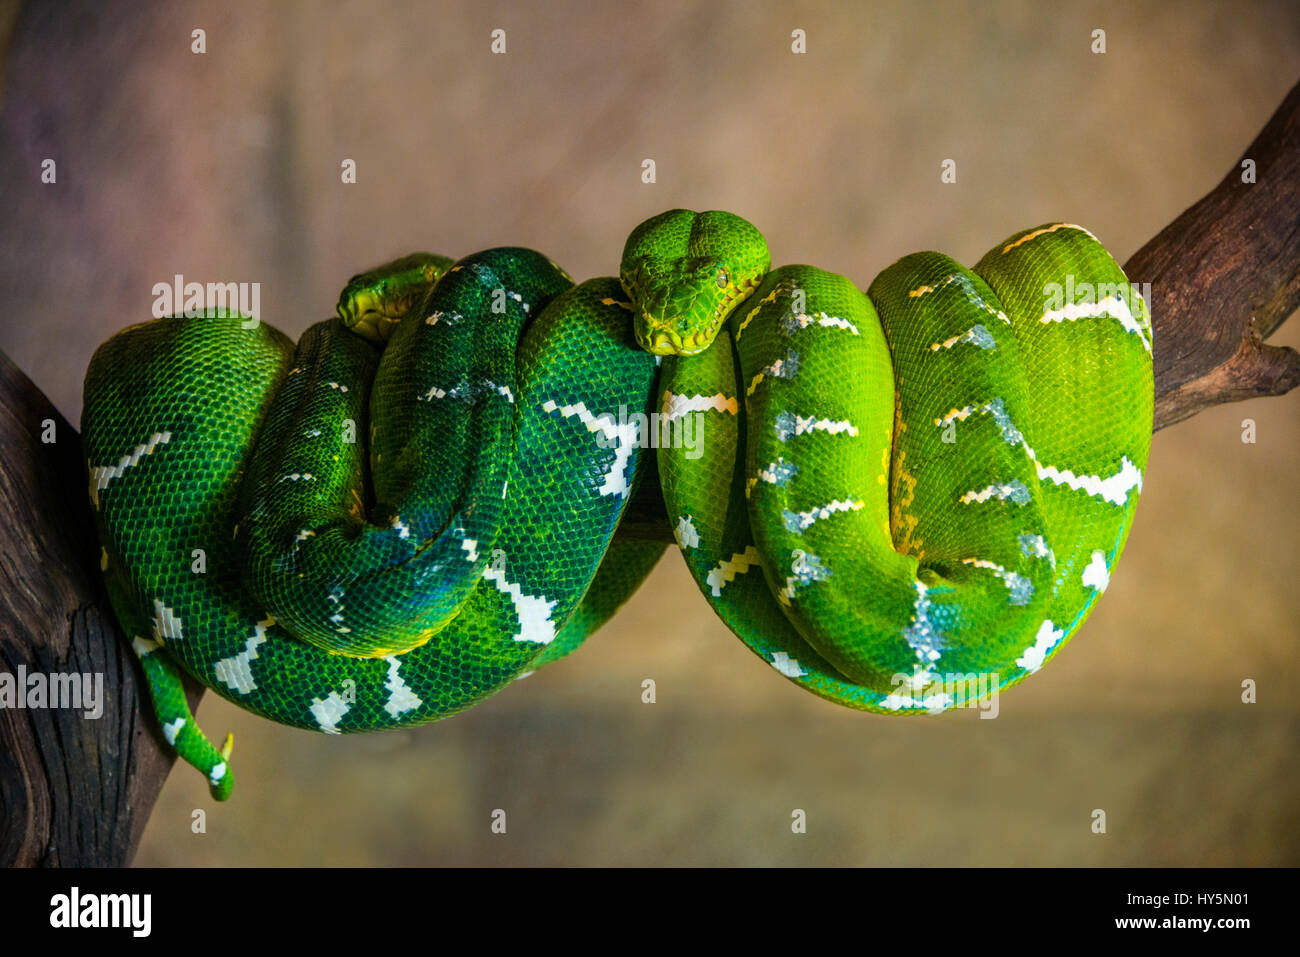 Green Tree Python (Morelia viridis) enroulé sur une branche, captive, zoo de Singapour, Singapour Banque D'Images